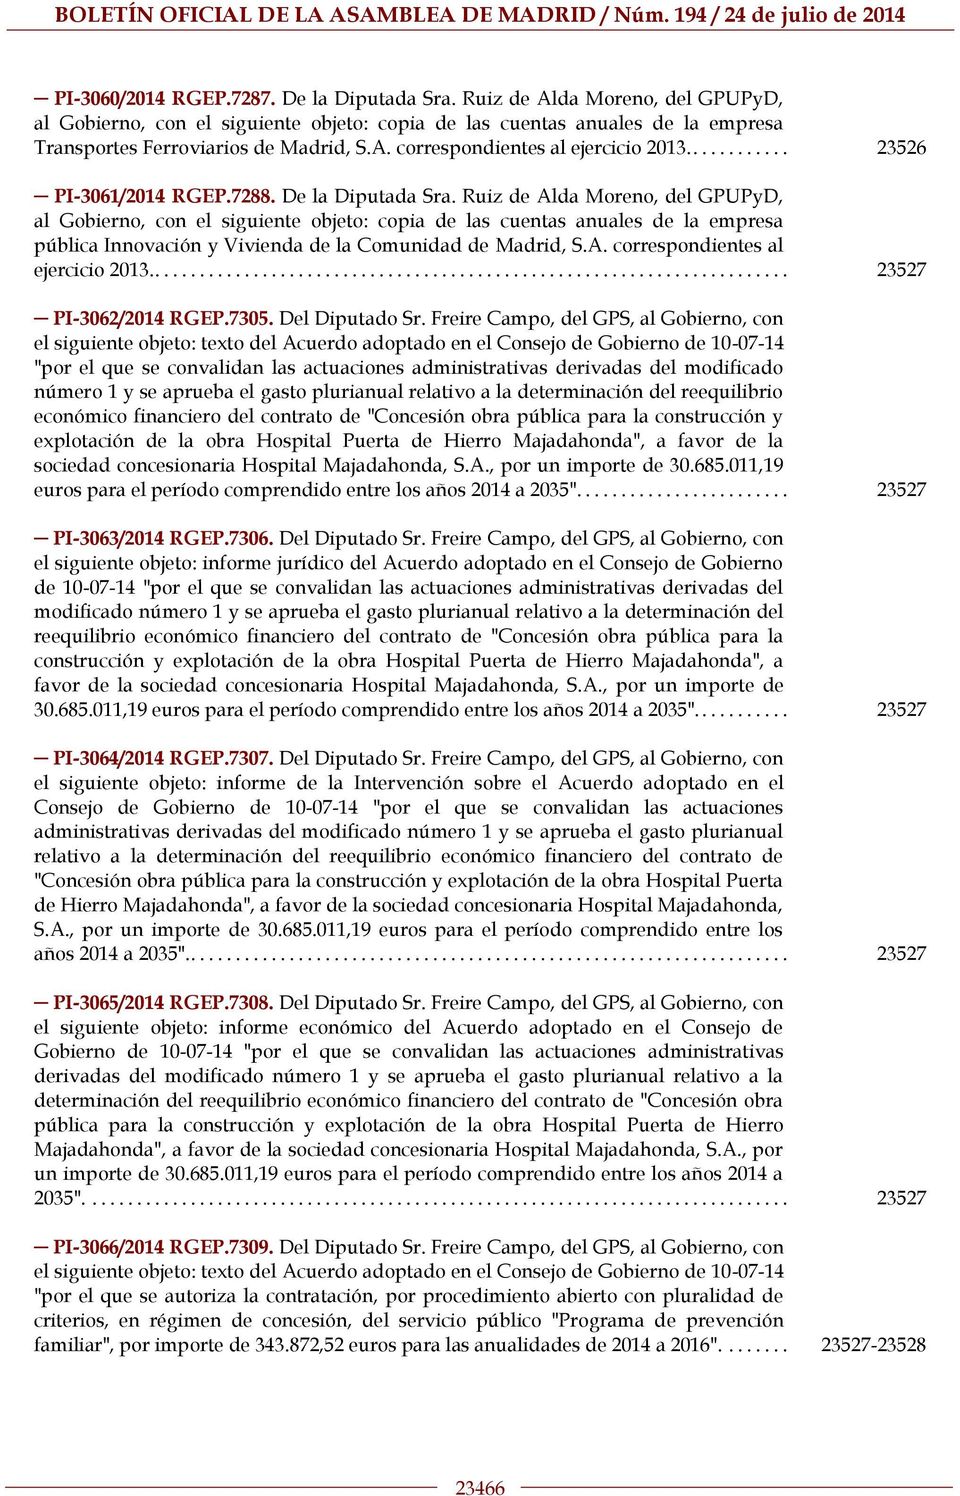 Ruiz de Alda Moreno, del GPUPyD, al Gobierno, con el siguiente objeto: copia de las cuentas anuales de la empresa pública Innovación y Vivienda de la Comunidad de Madrid, S.A. correspondientes al ejercicio 2013.